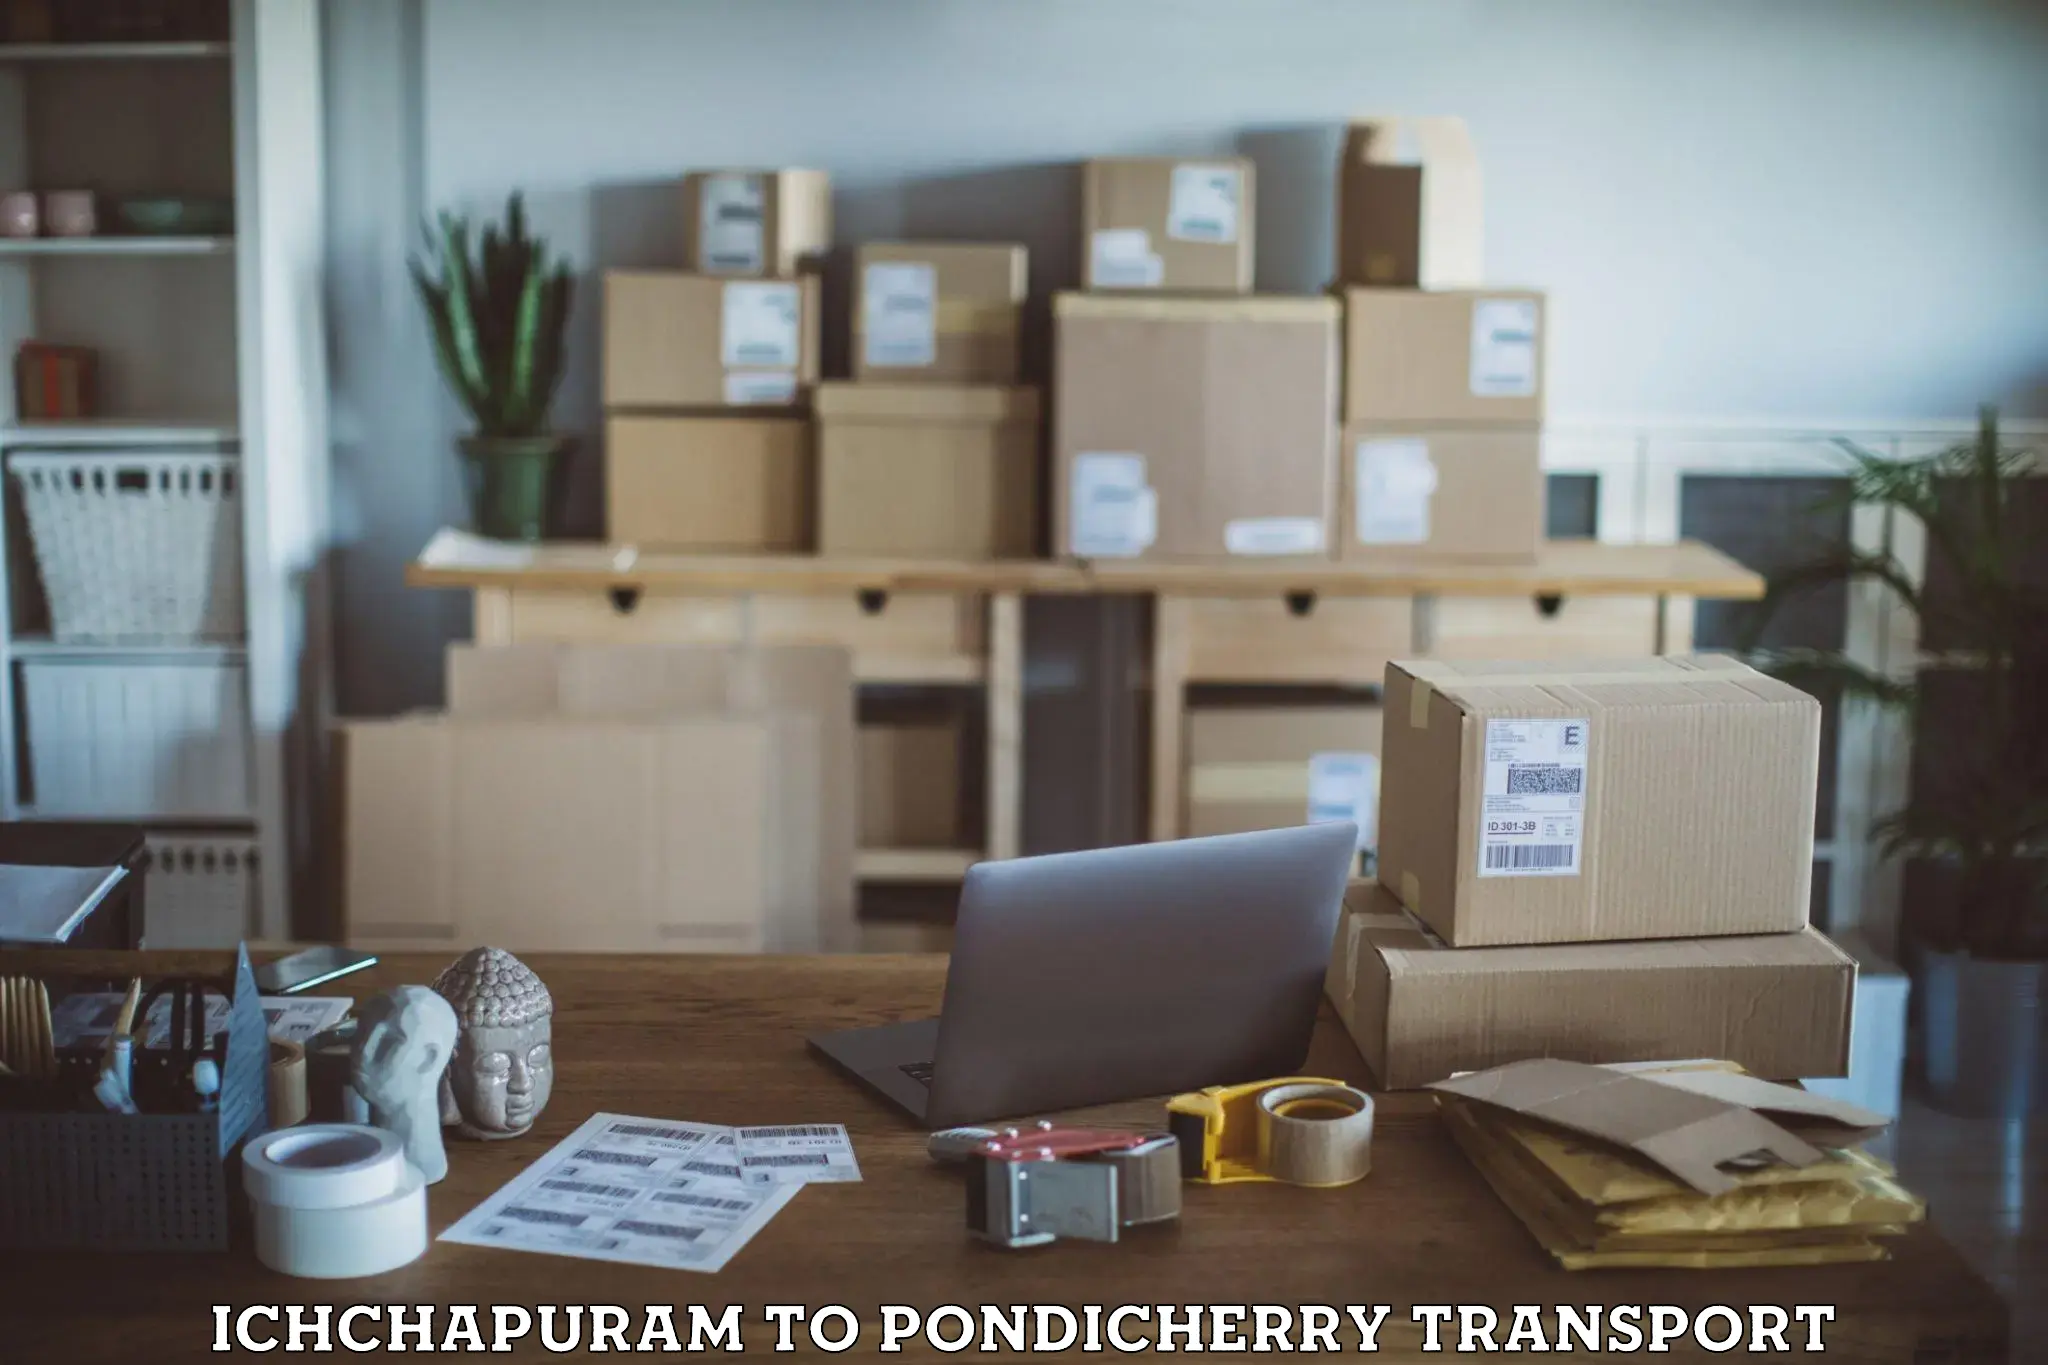 Container transport service Ichchapuram to Pondicherry